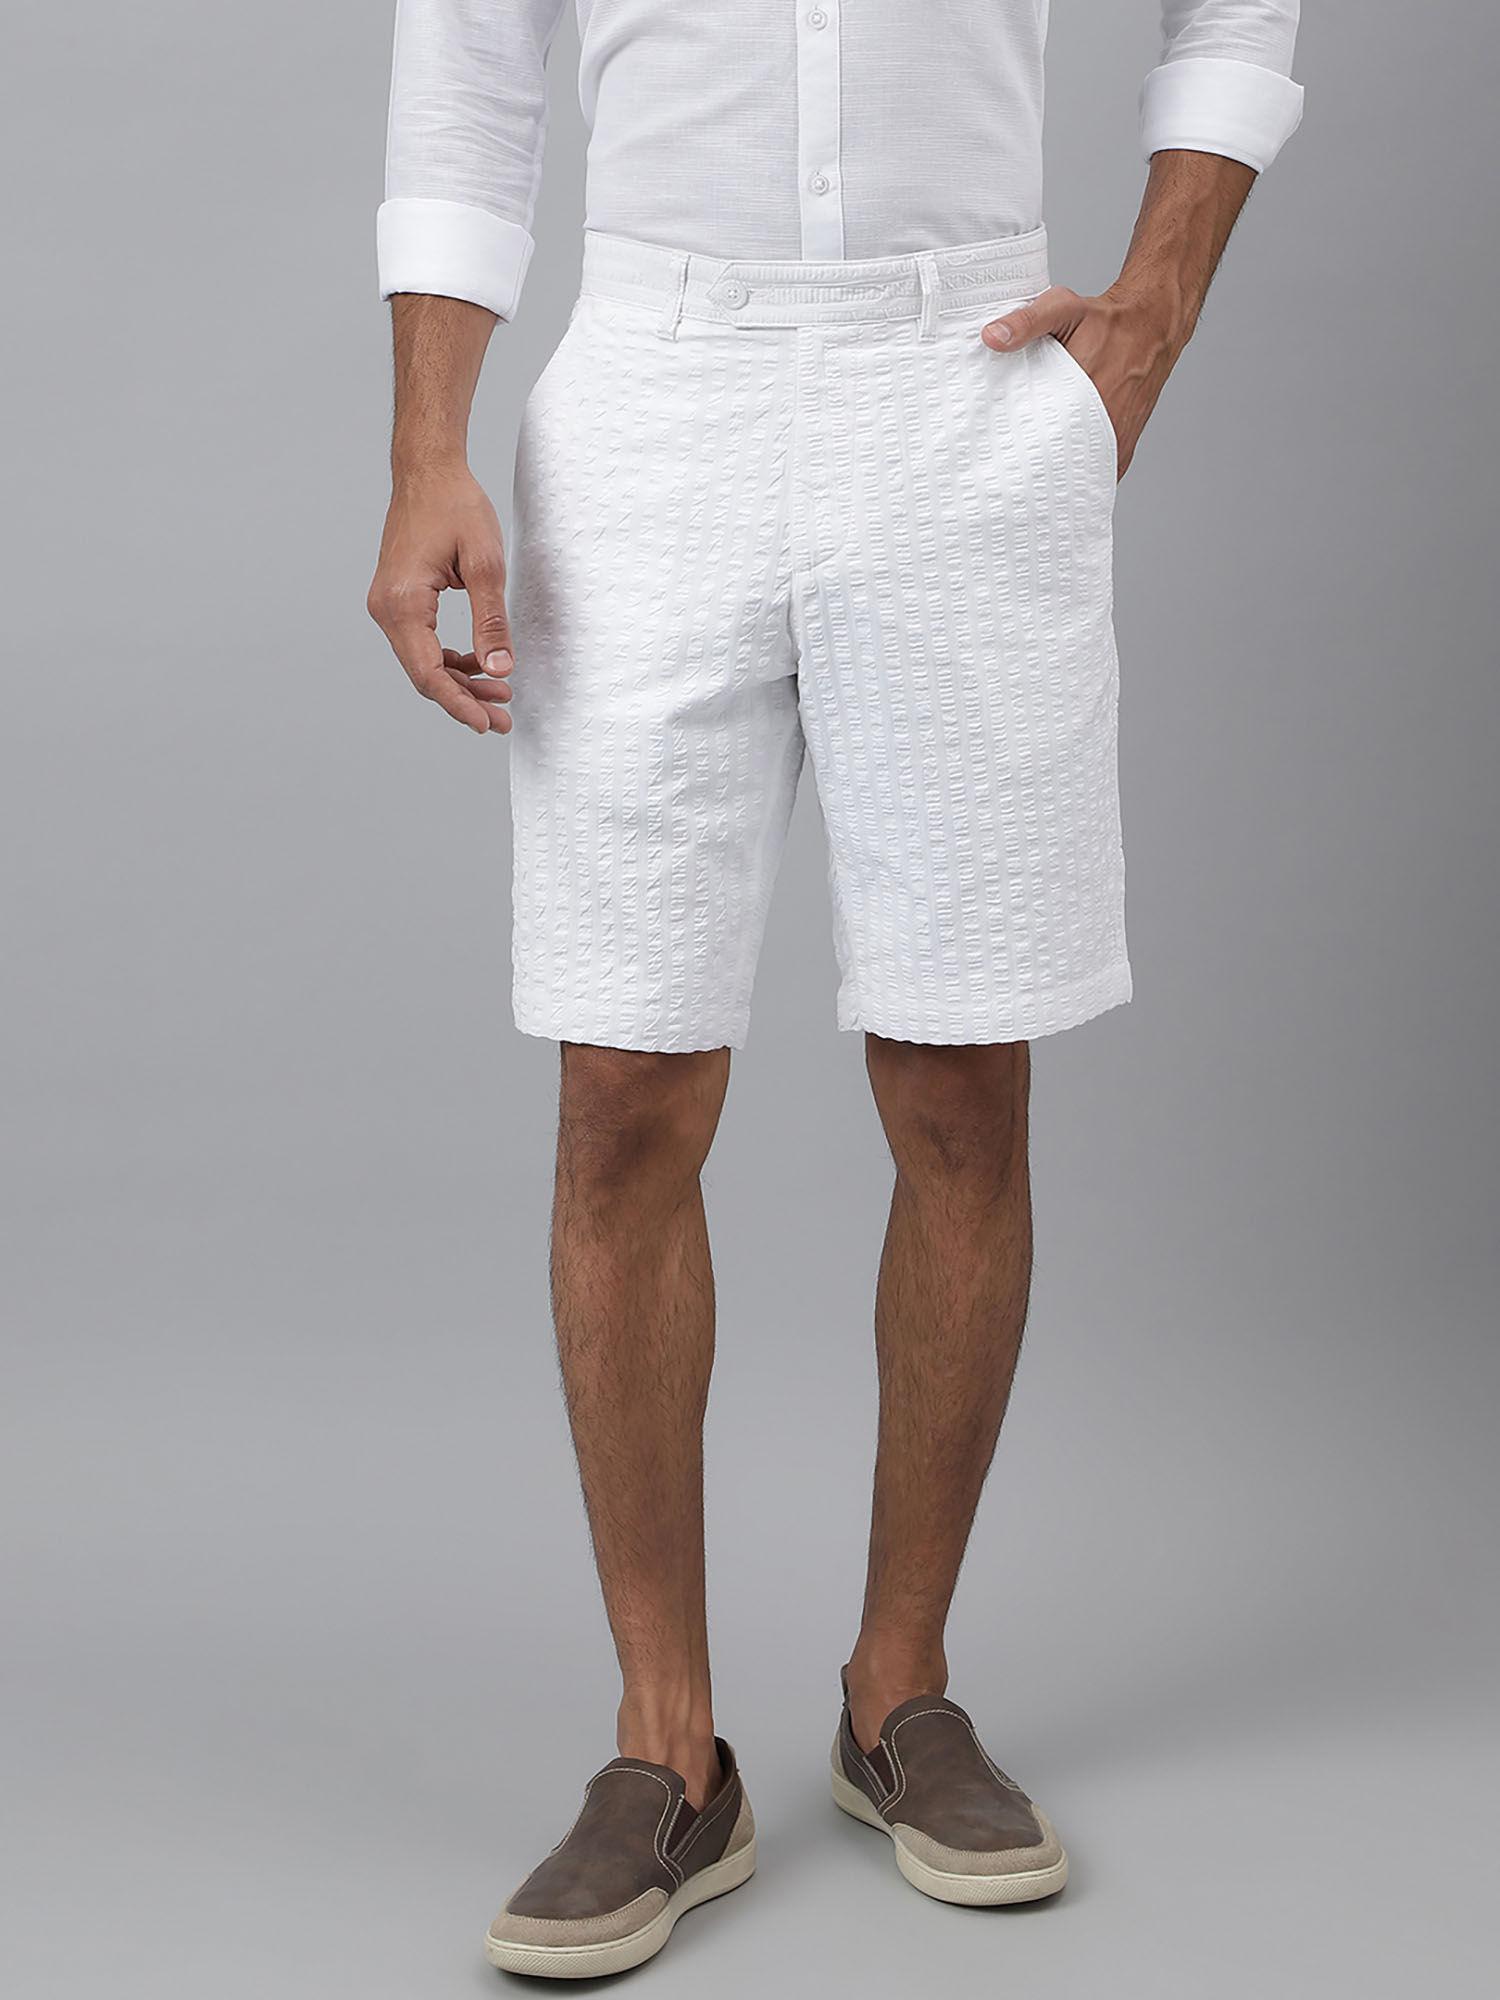 contrails-white seersucker shorts